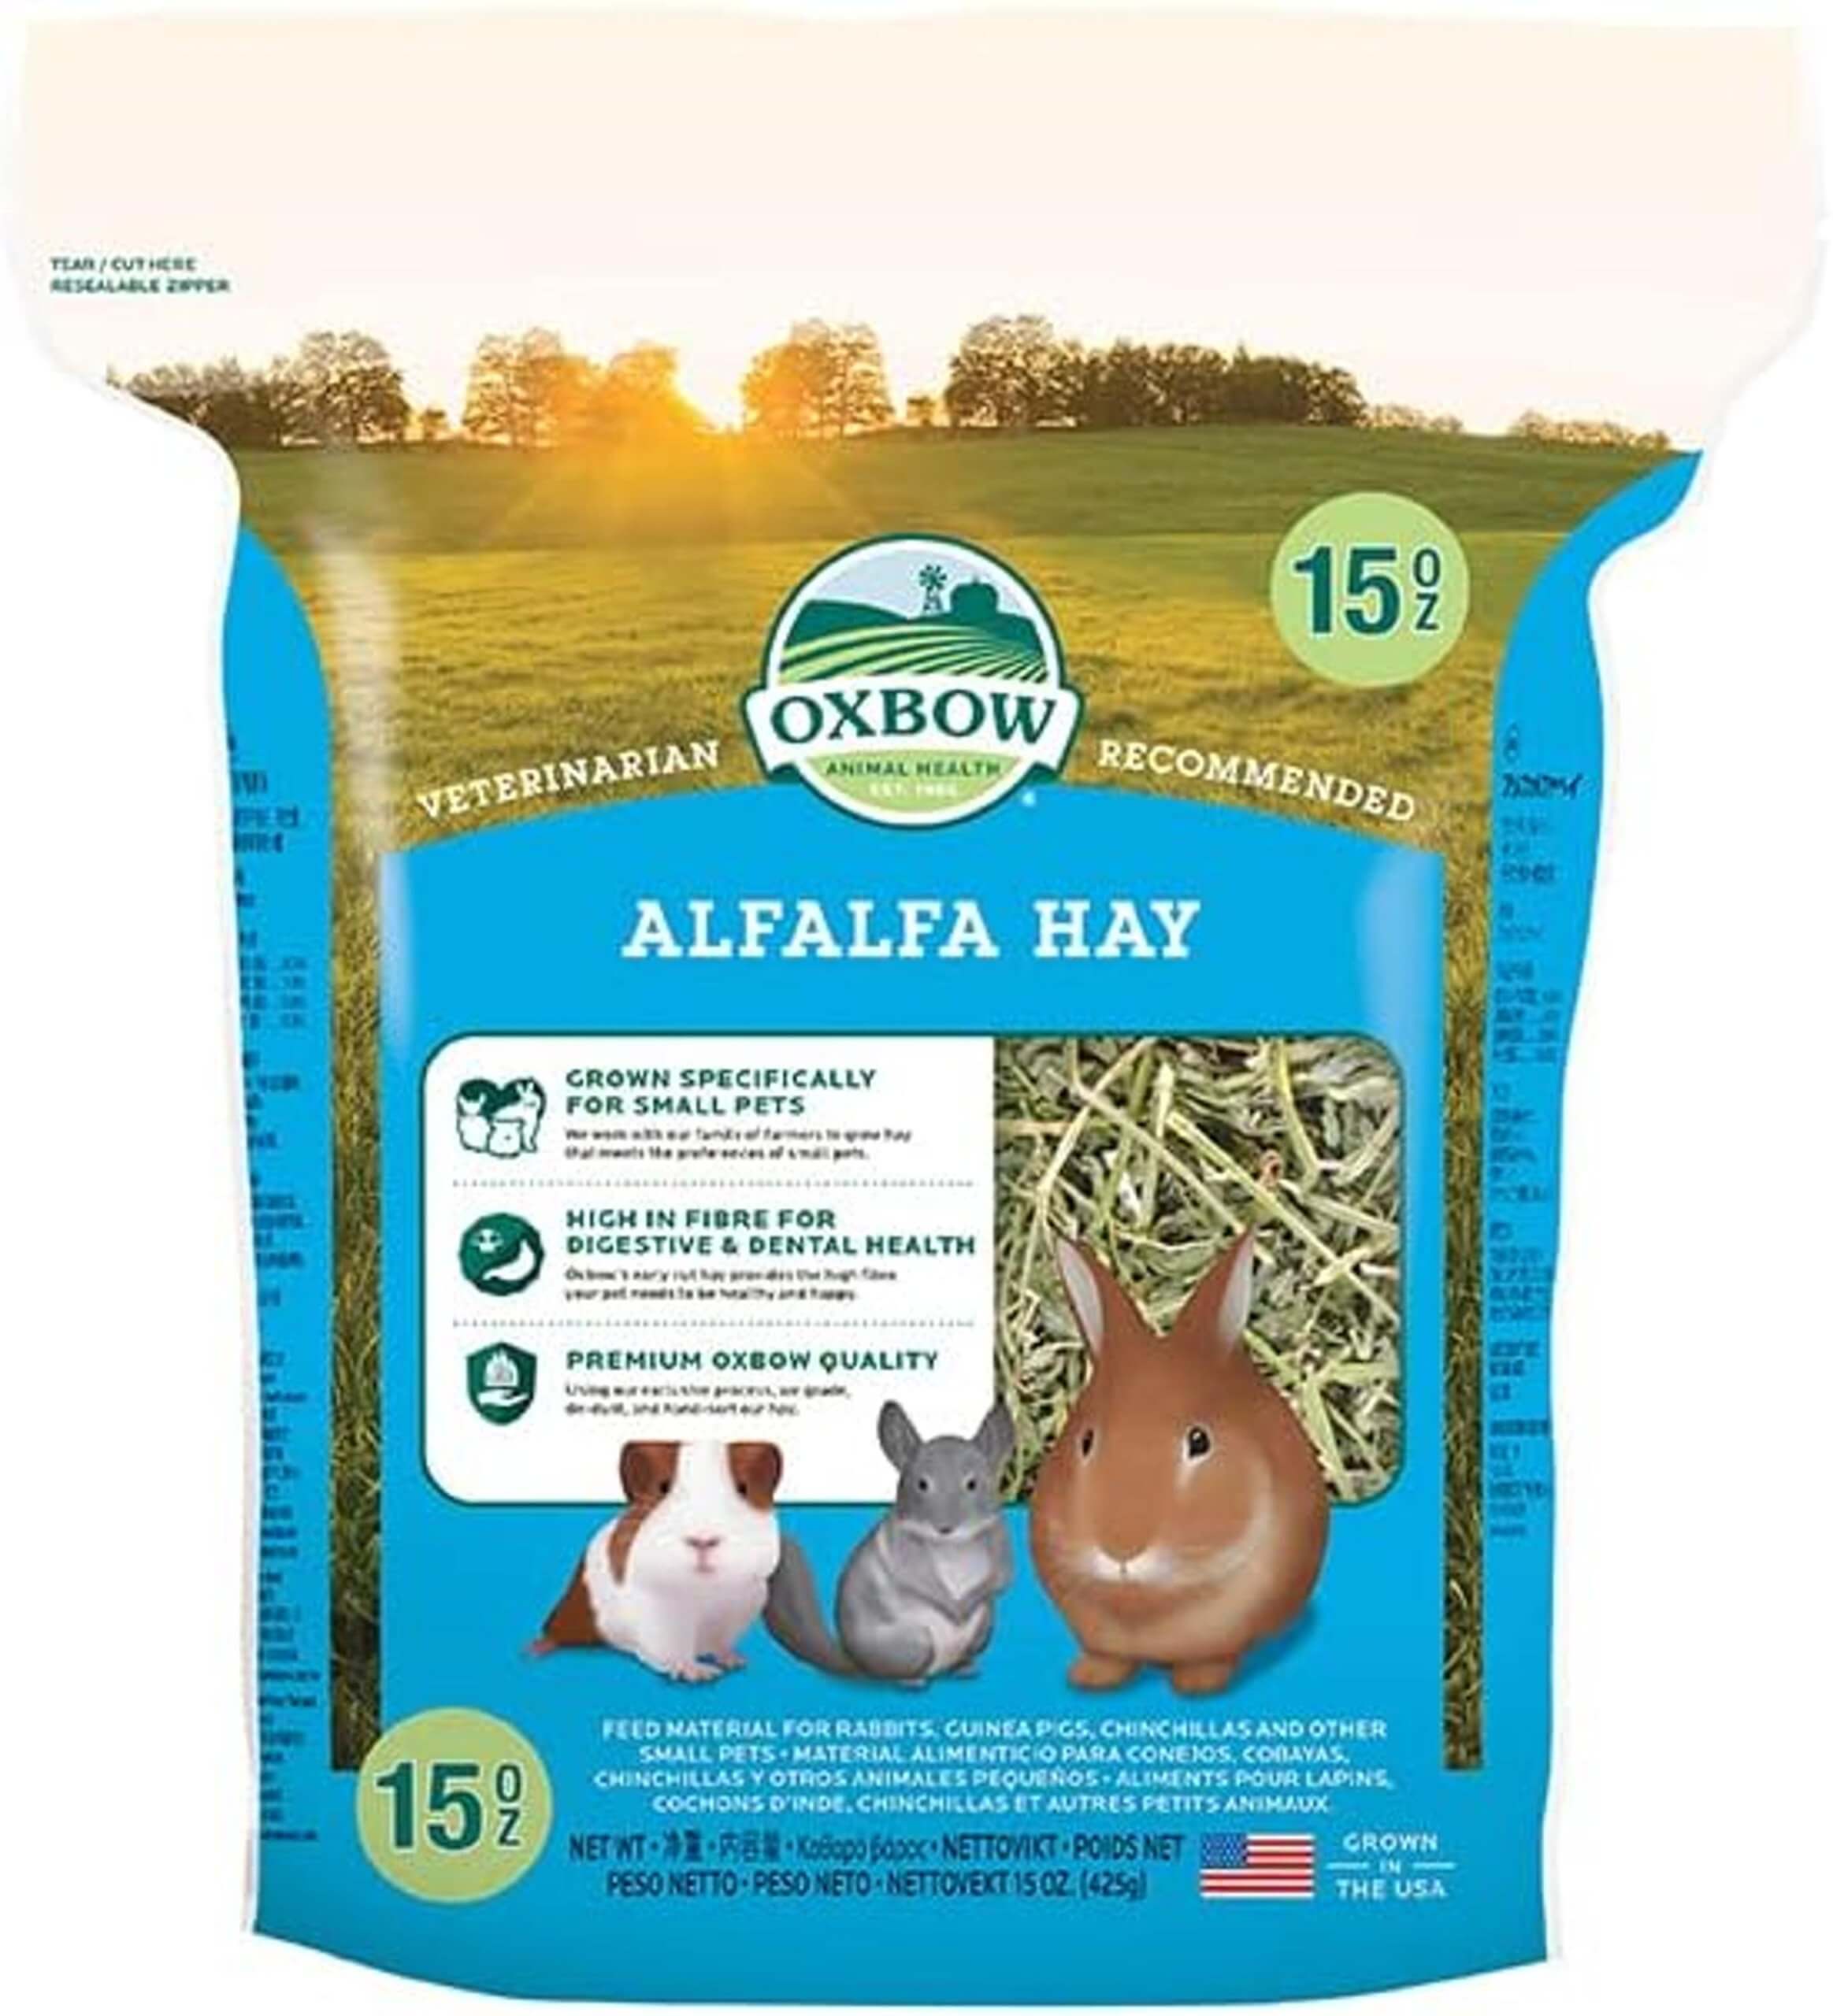 Oxbow alfalfa hay